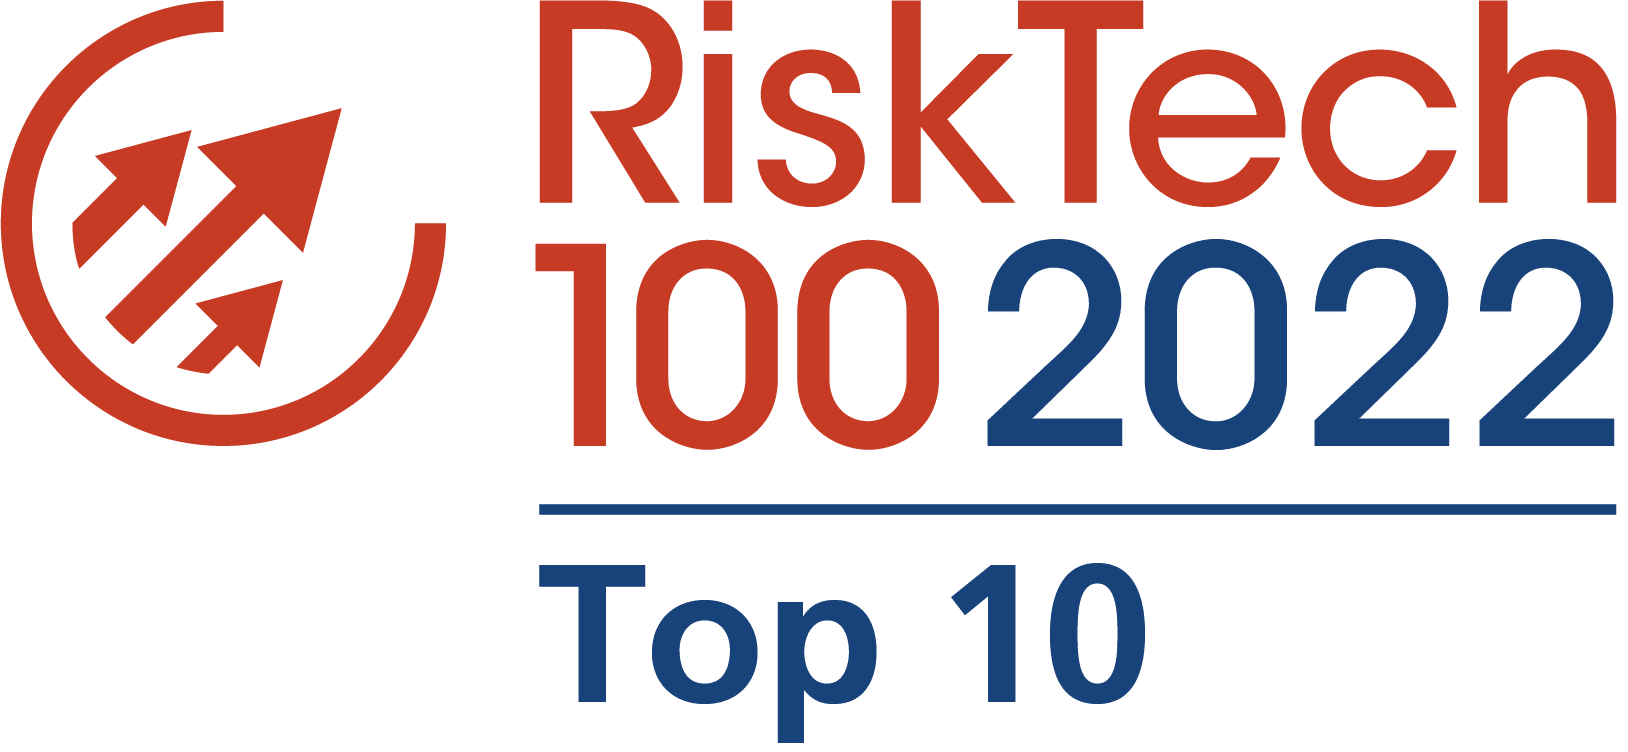 Chartis RiskTech100 2022 Top 10 logo